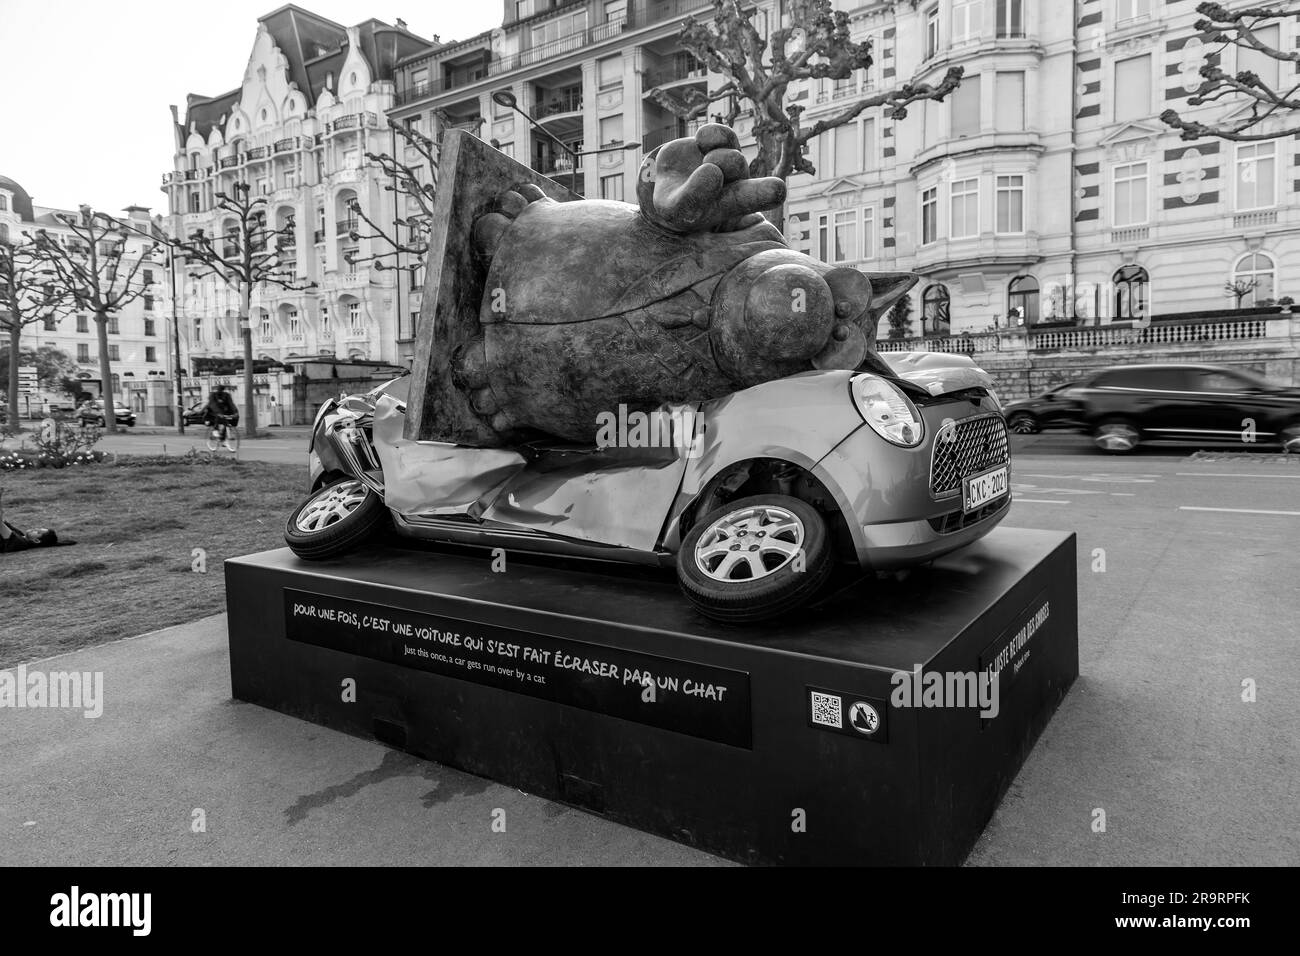 Genève, Suisse - 25 mars 2022 : exposition de sculptures le Chat, créée par l'artiste de dessin animé belge Philippe Geluck, le long du lac Léman Banque D'Images